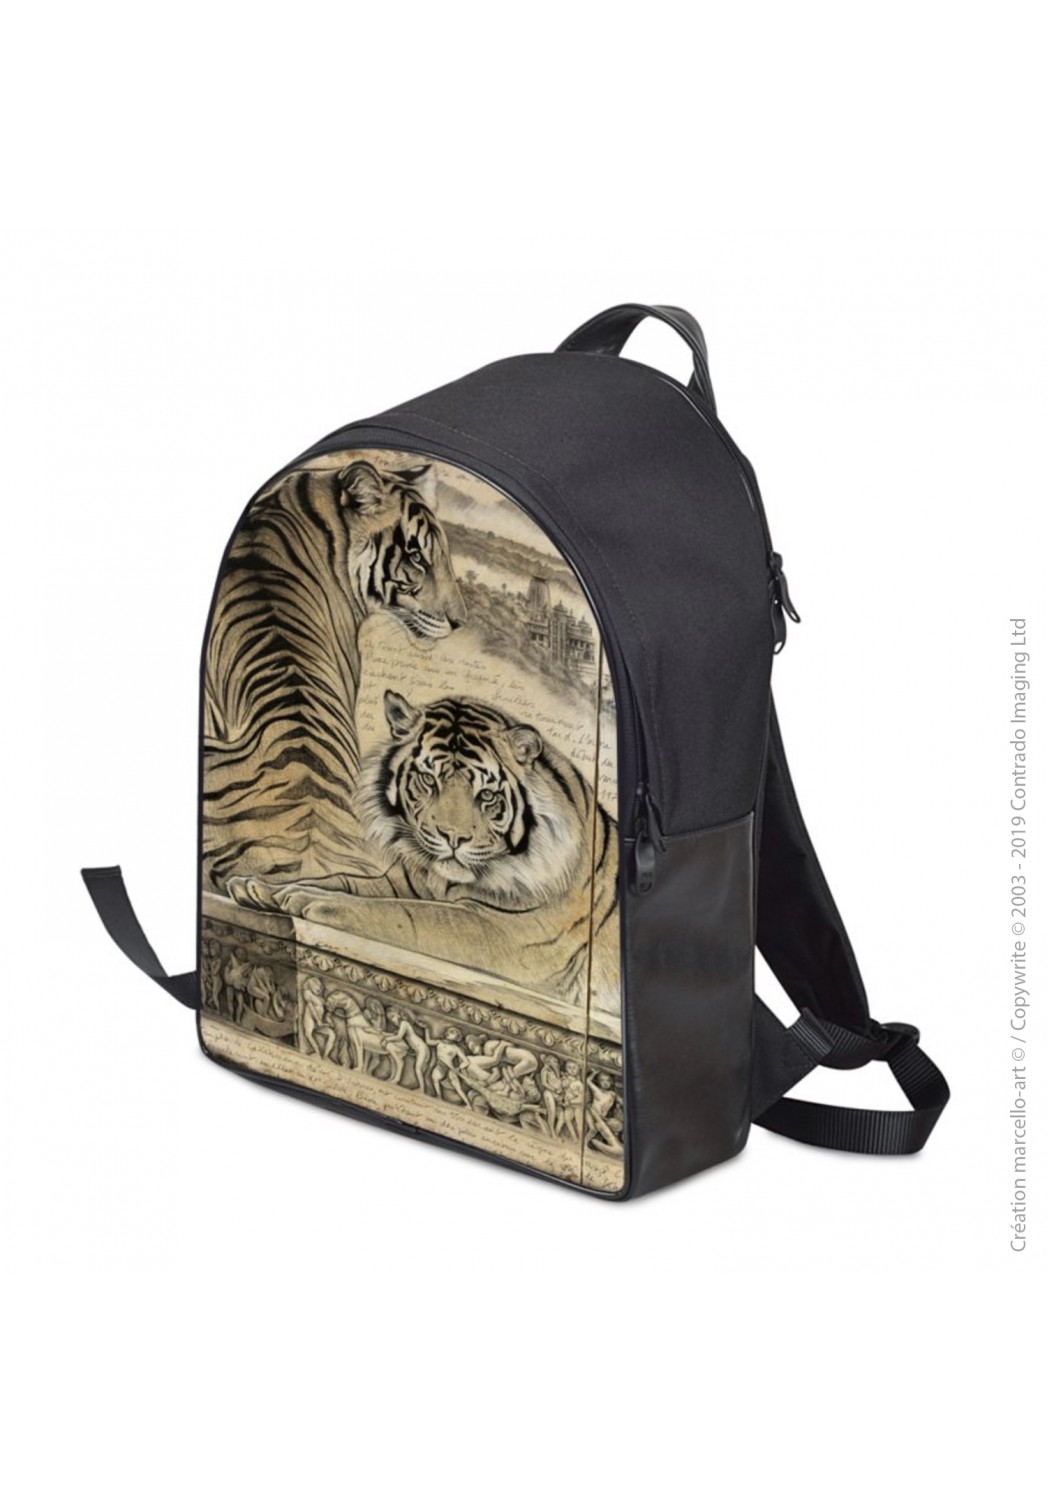 Marcello-art: Fashion accessory Backpack 304 A kamasutra